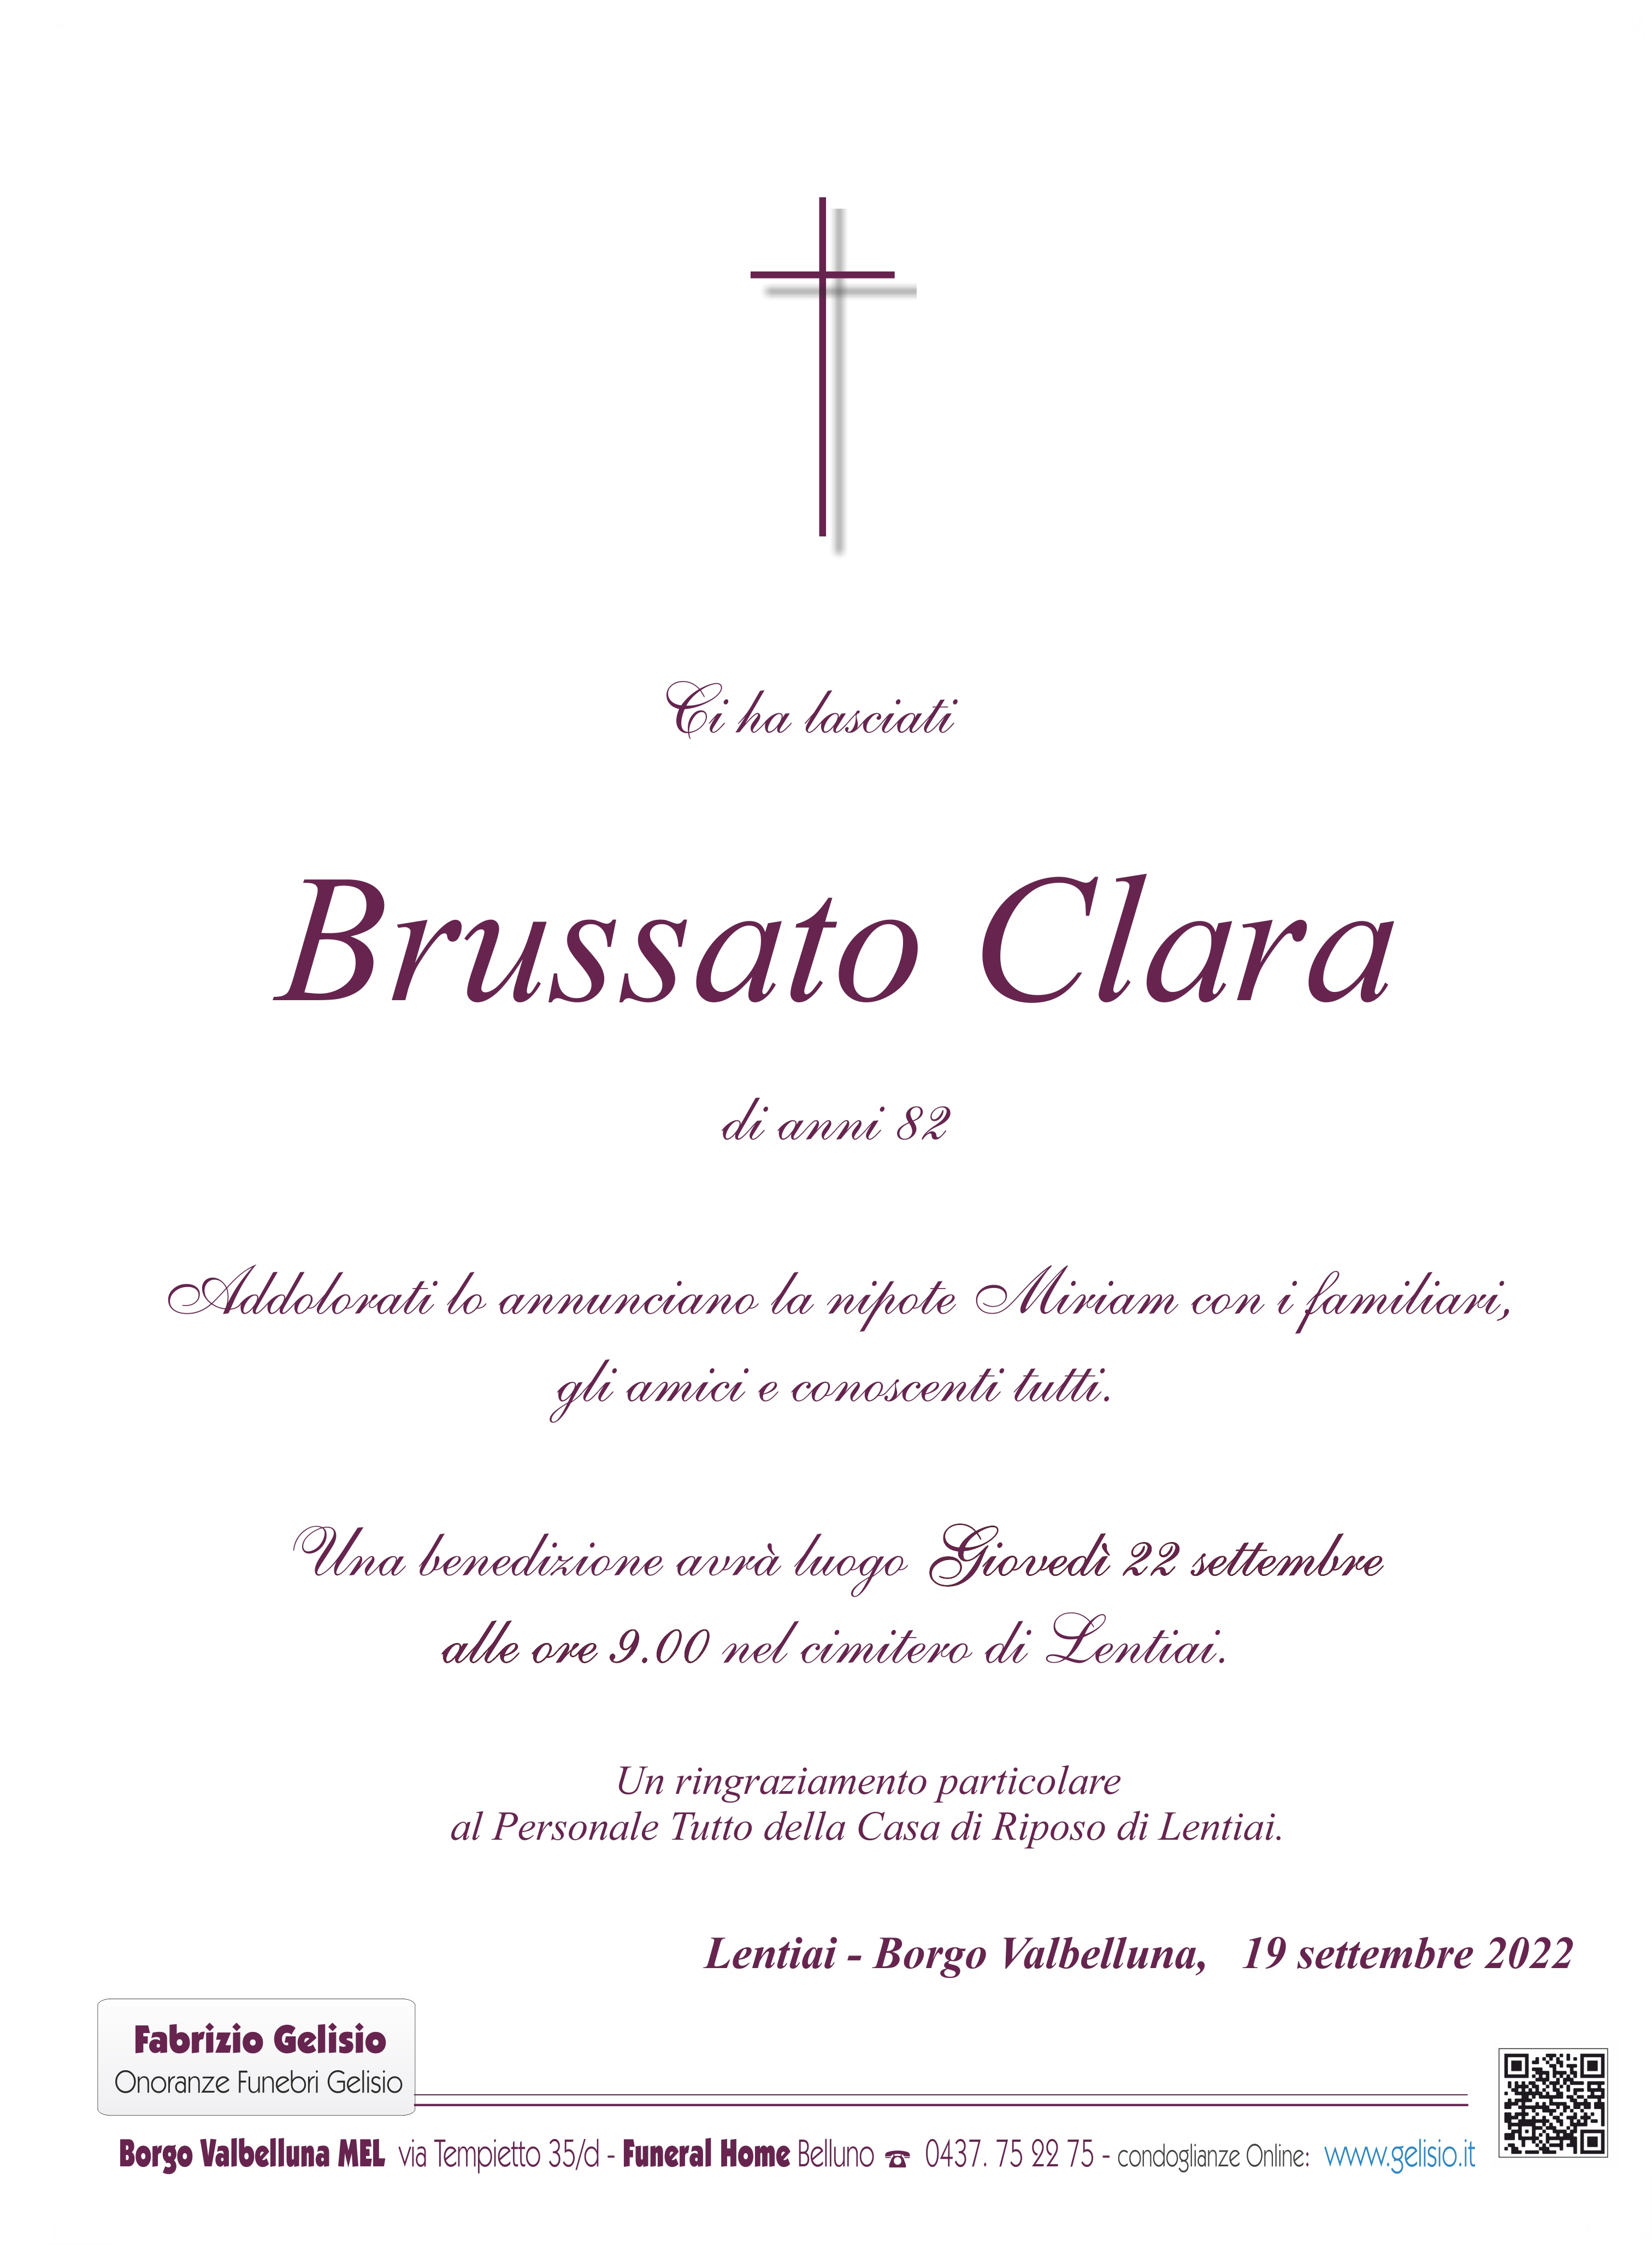 Brussato Clara